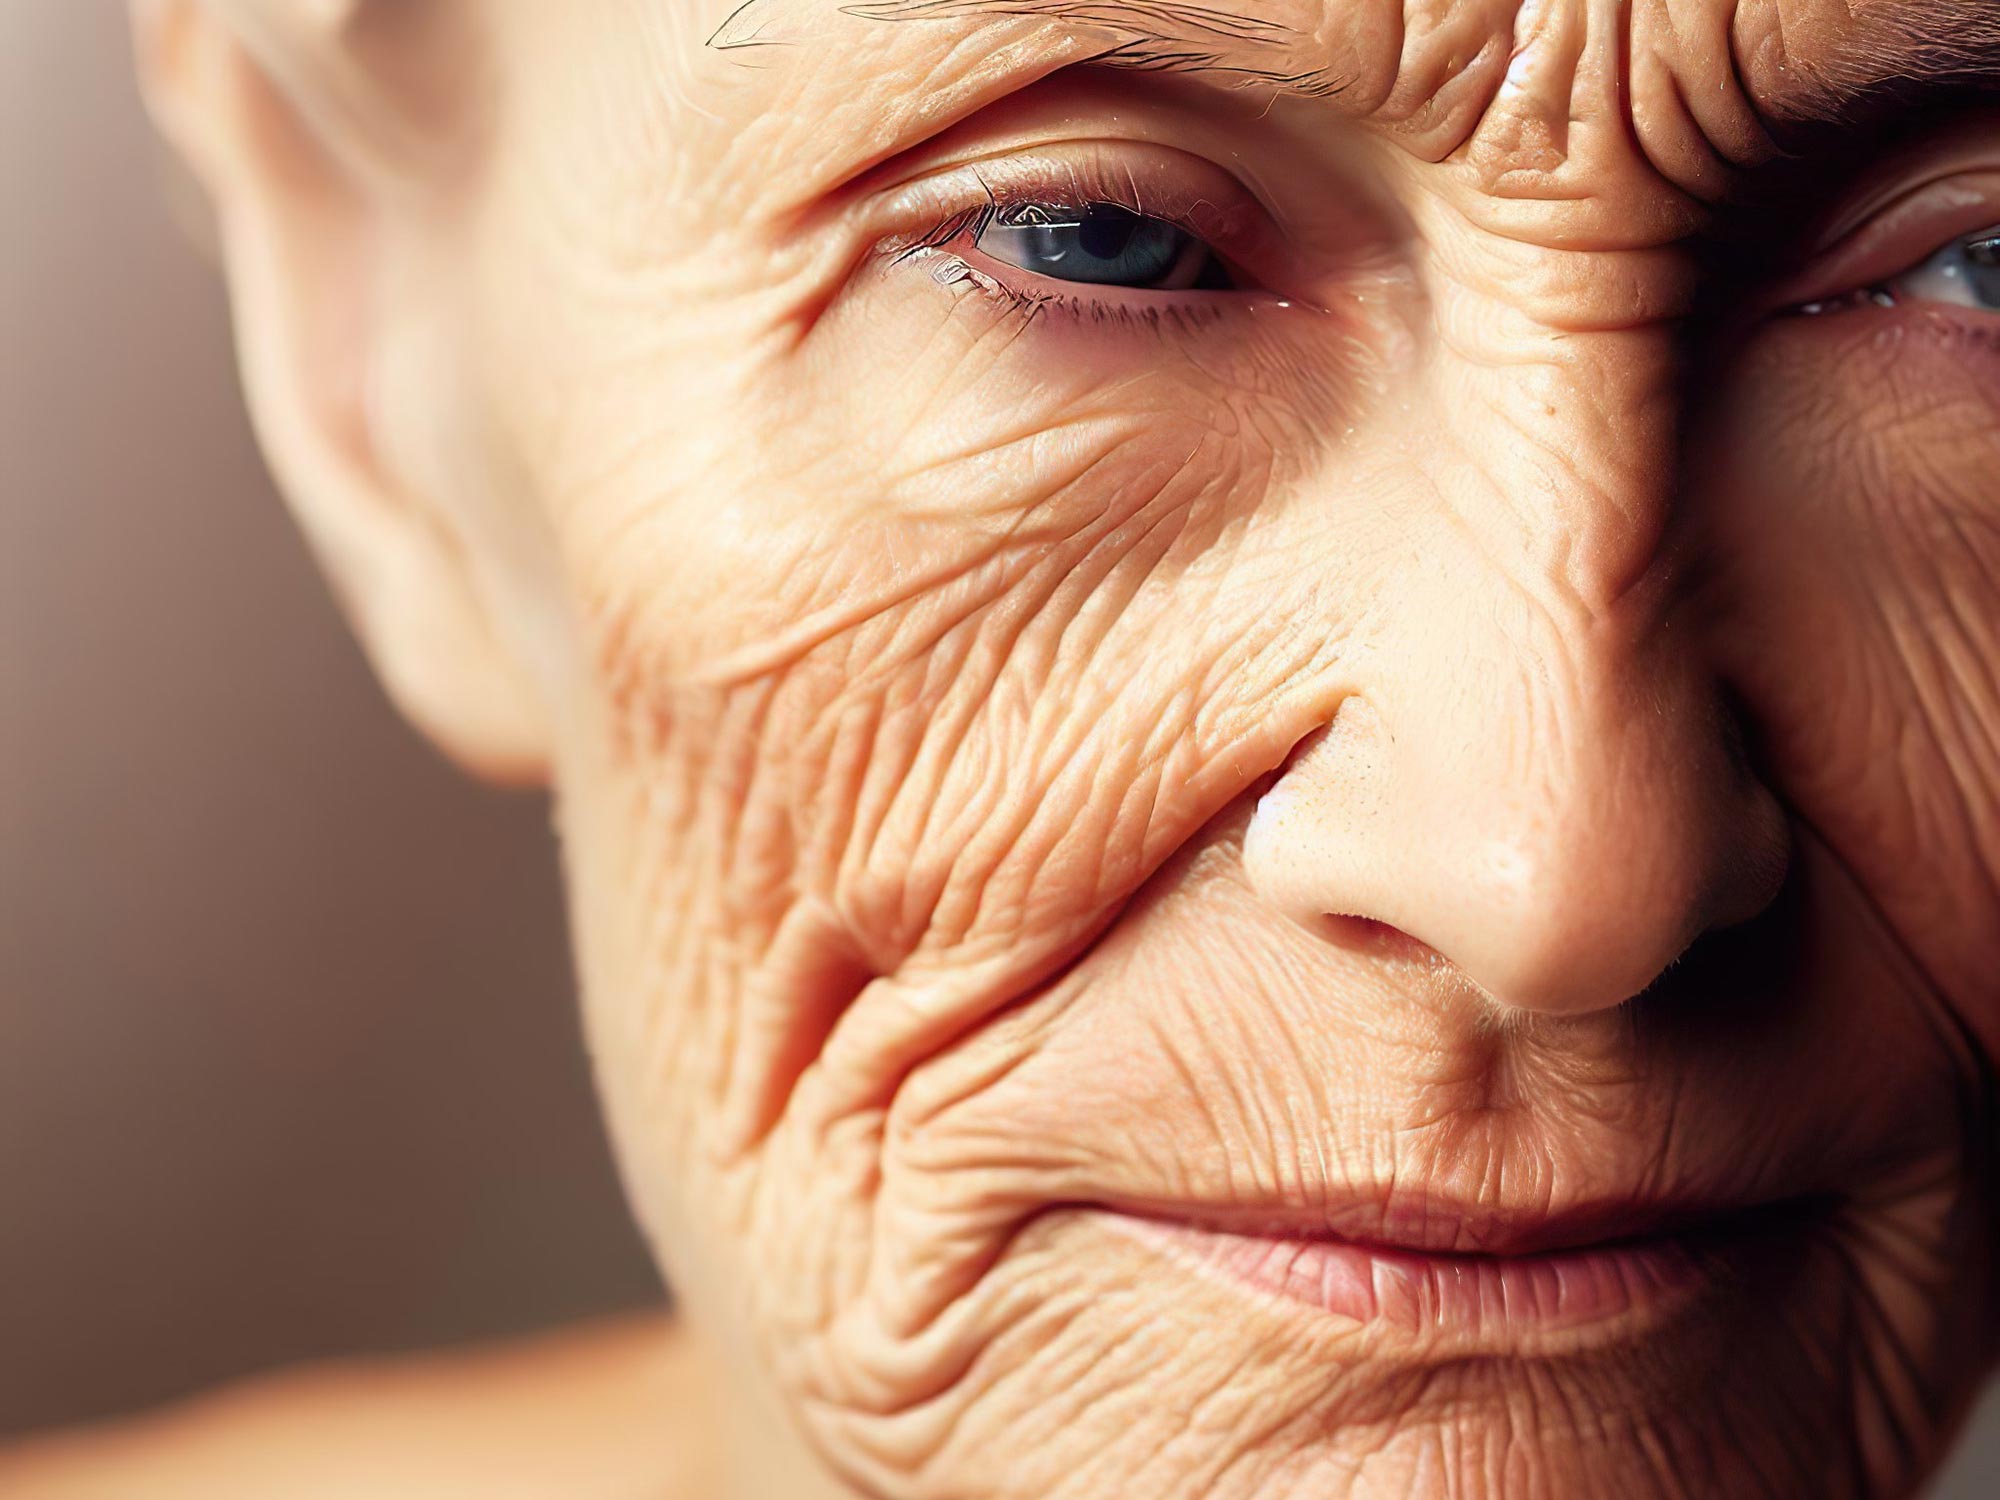 Los científicos han descubierto una proteína que juega un papel importante en el envejecimiento de la piel